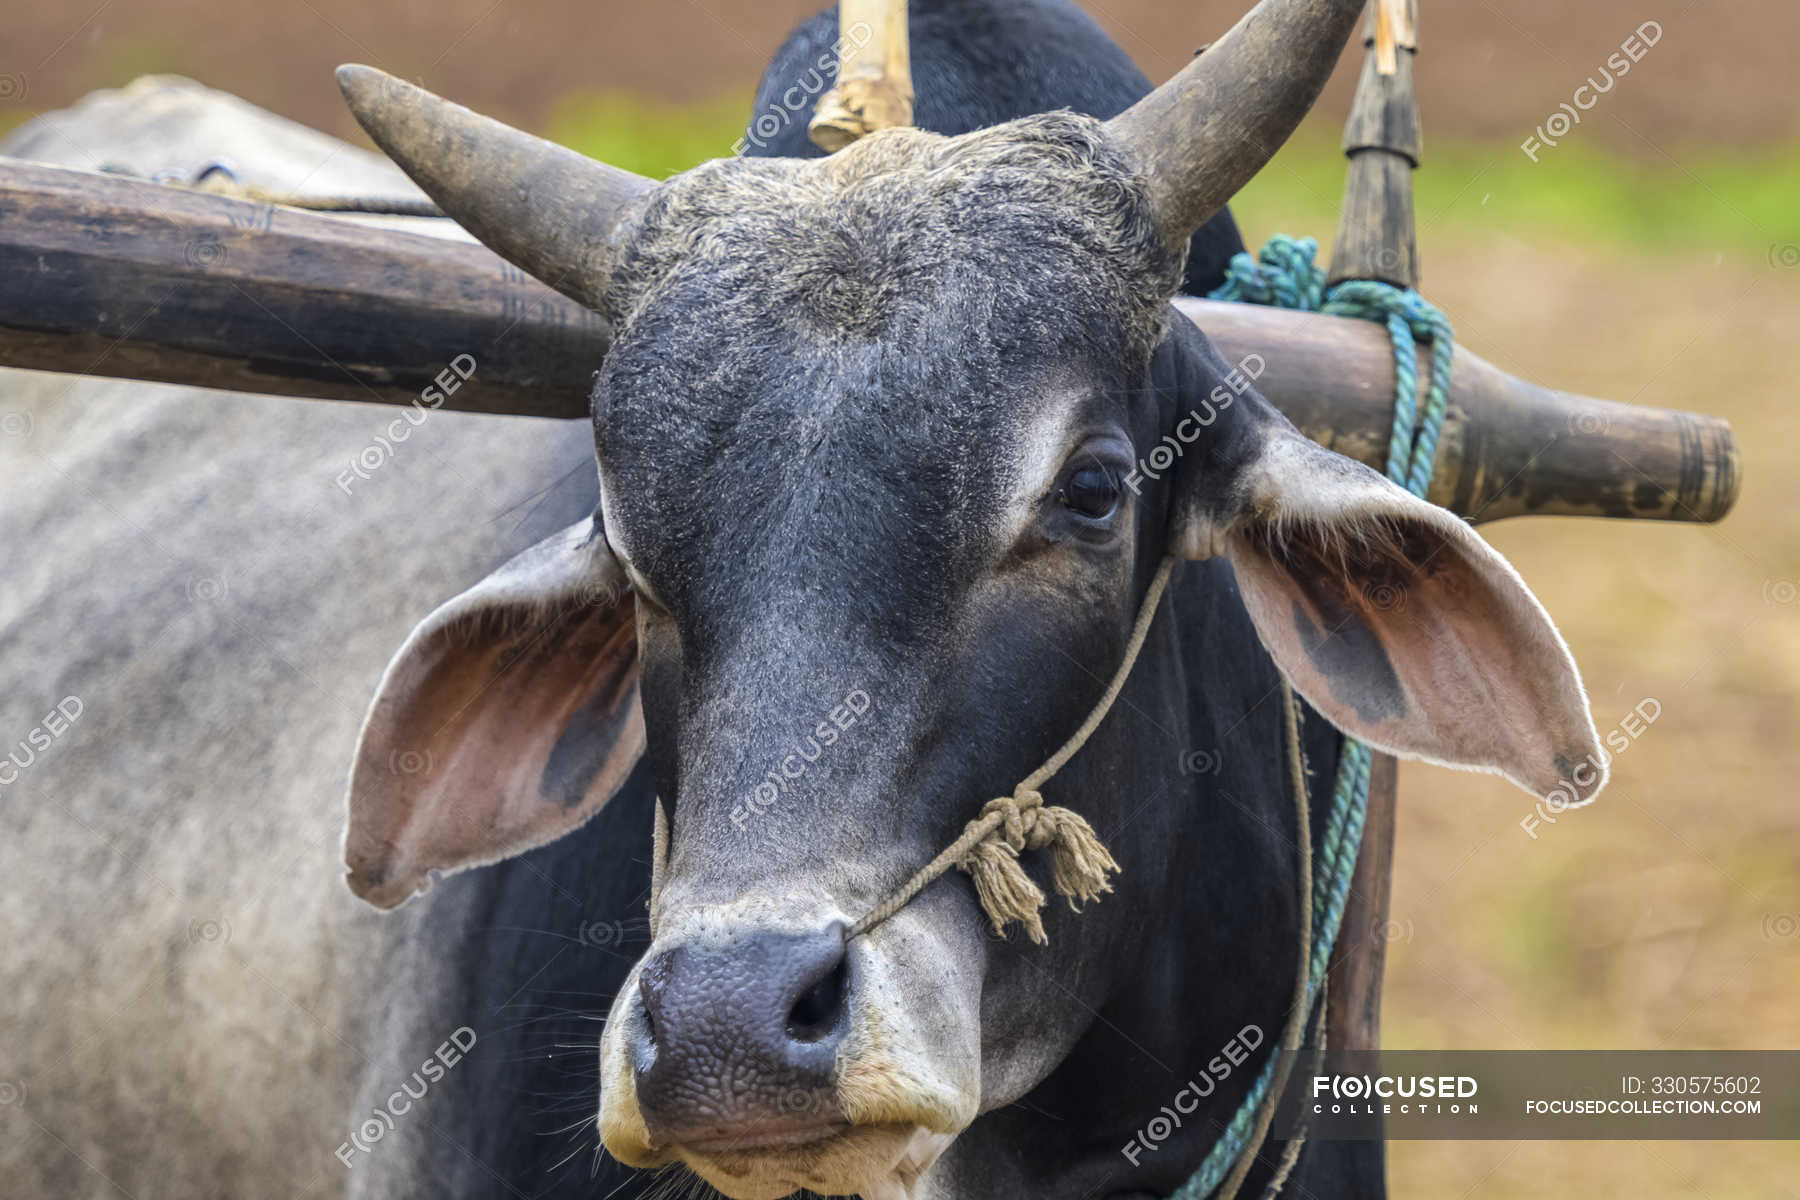 Buffalo wearing a yoke; Shan State, Myanmar — rural, Front View - Stock  Photo | #330575602